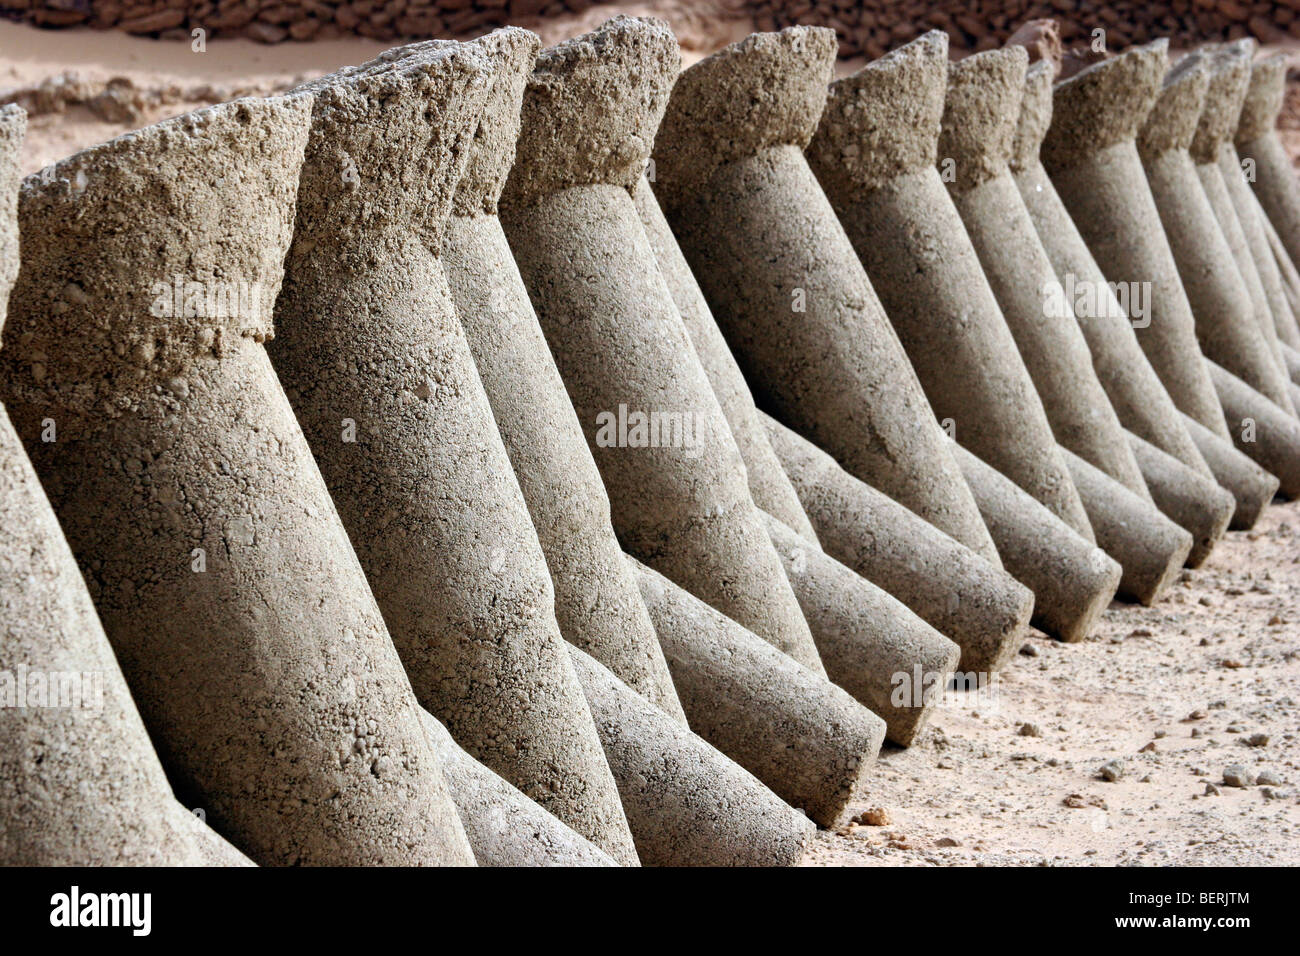 Pilastri di sale estratto dal natron saline / BALMA nel deserto del Sahara presso l'oasi cittadina Bilma, Niger, Africa occidentale Foto Stock